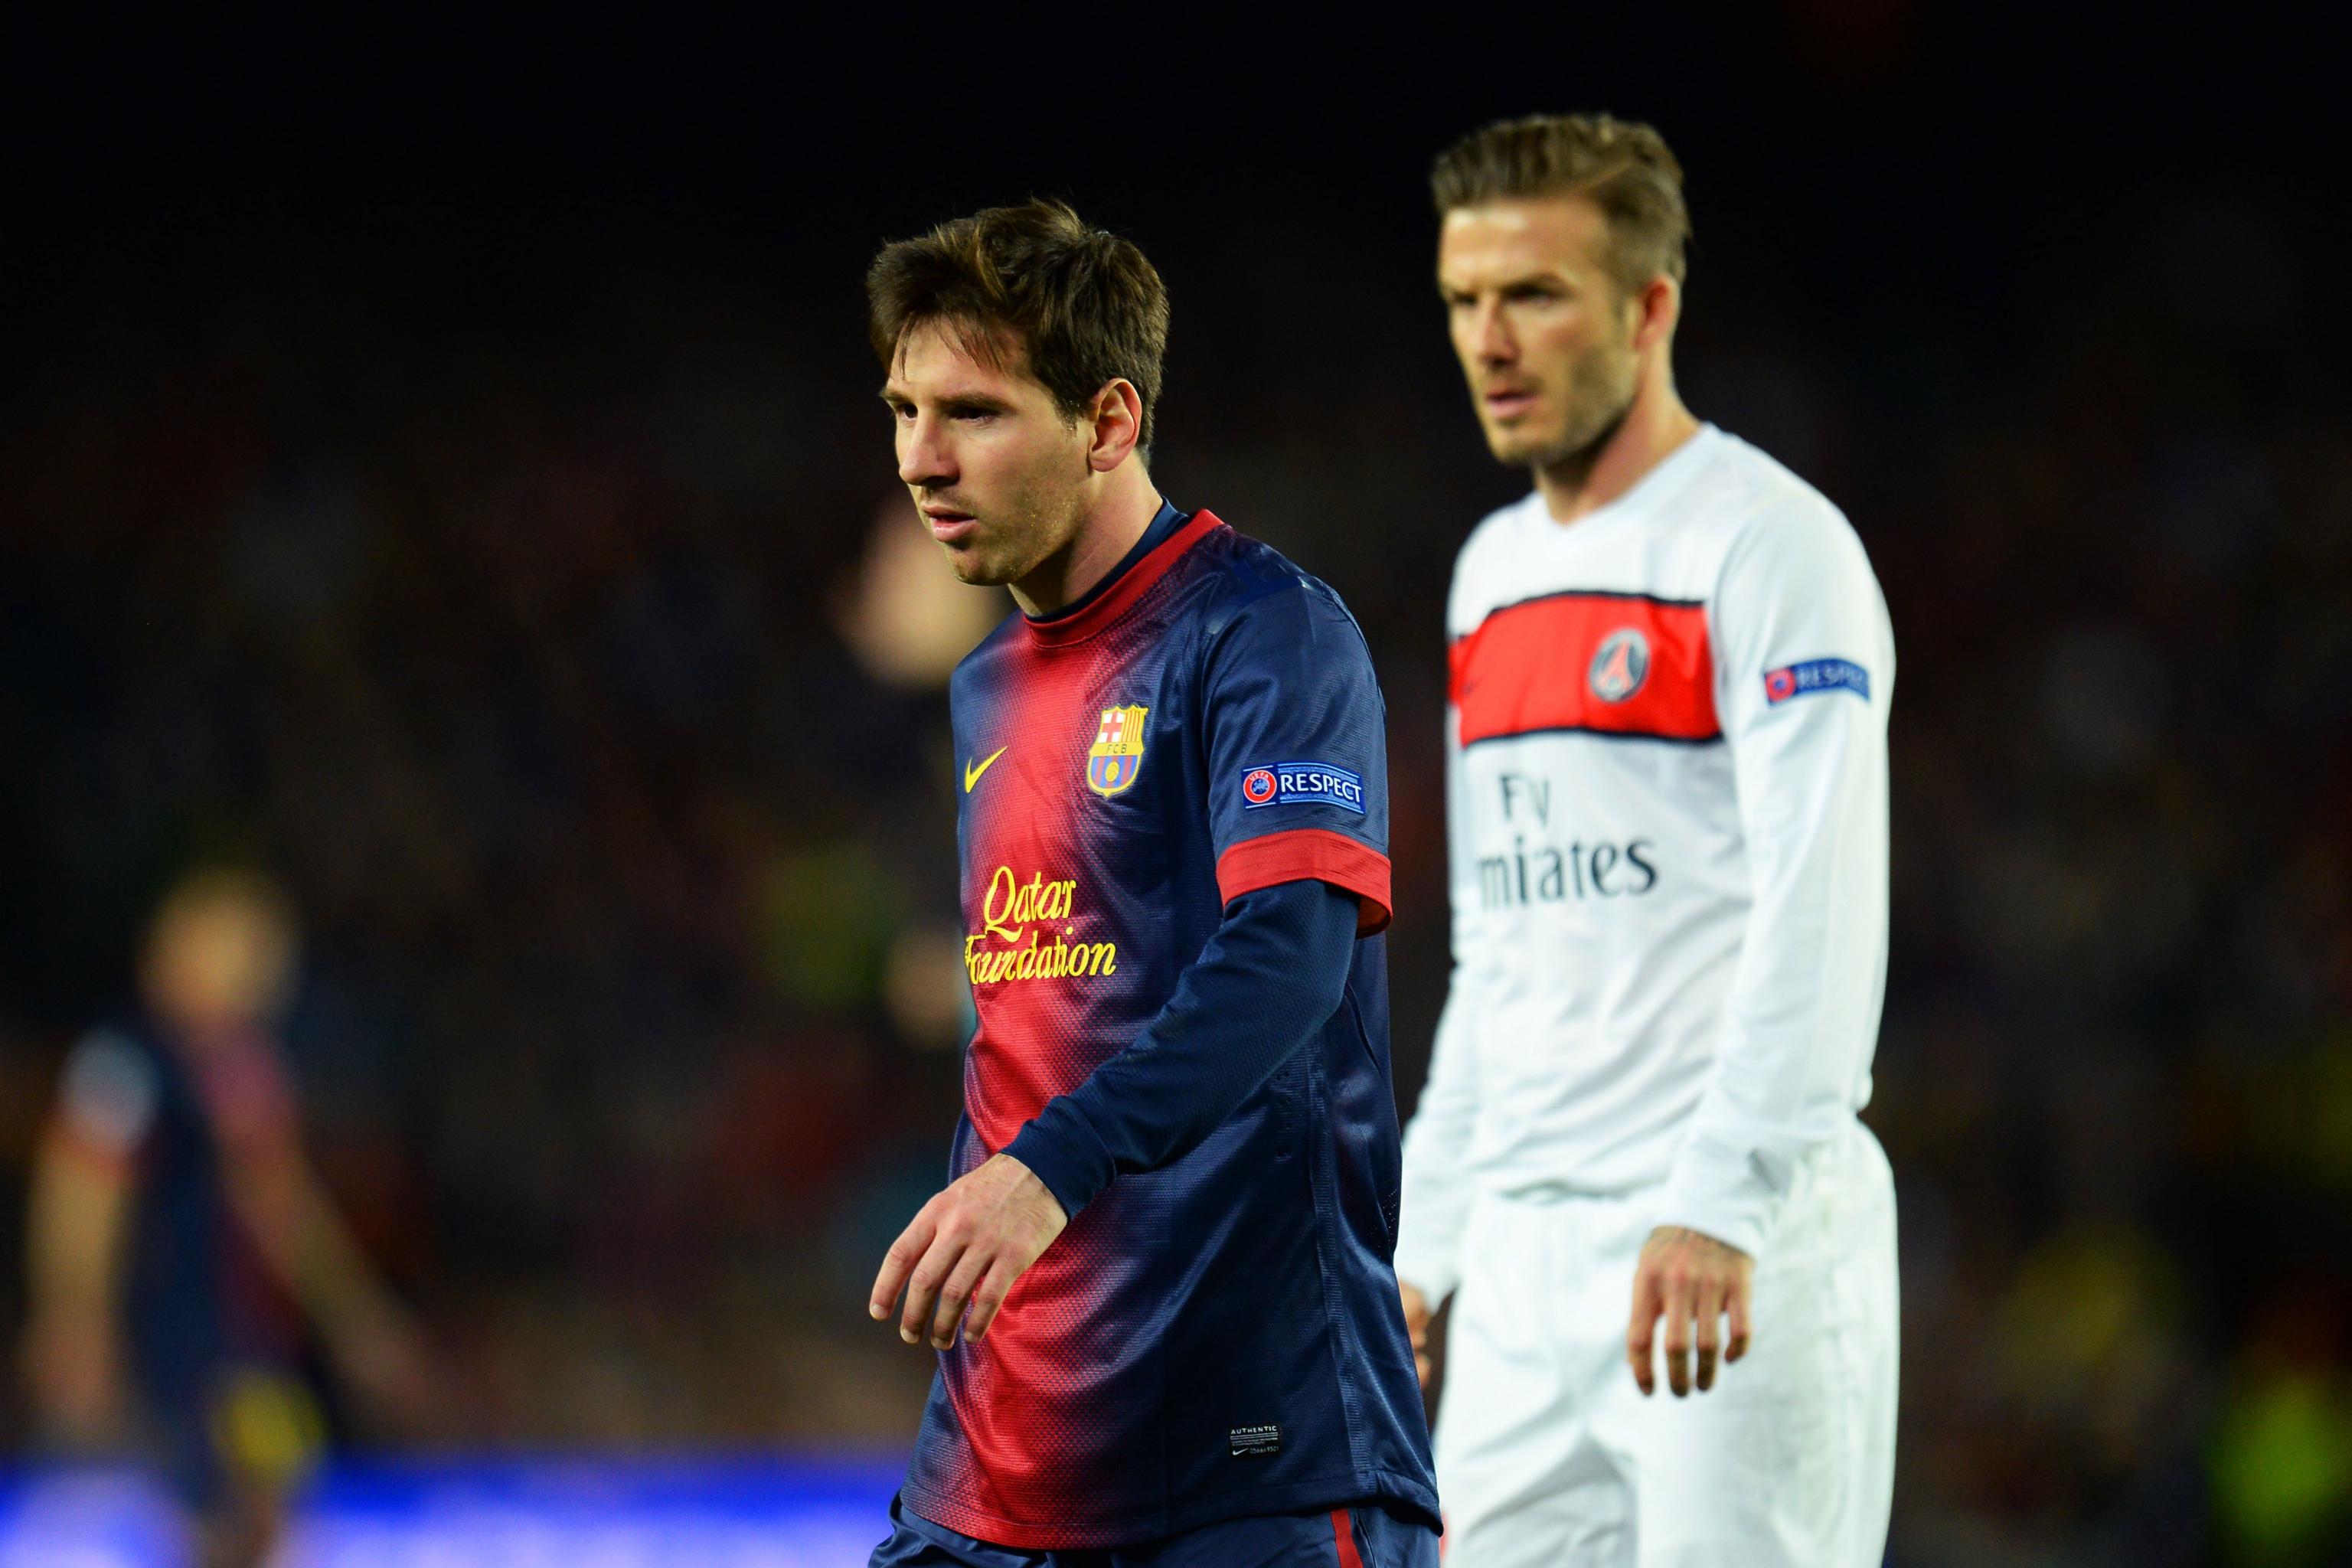 Tin đồn Lionel Messi chuyển đến câu lạc bộ MLS của David Beckham có thật không? (Phần 2)